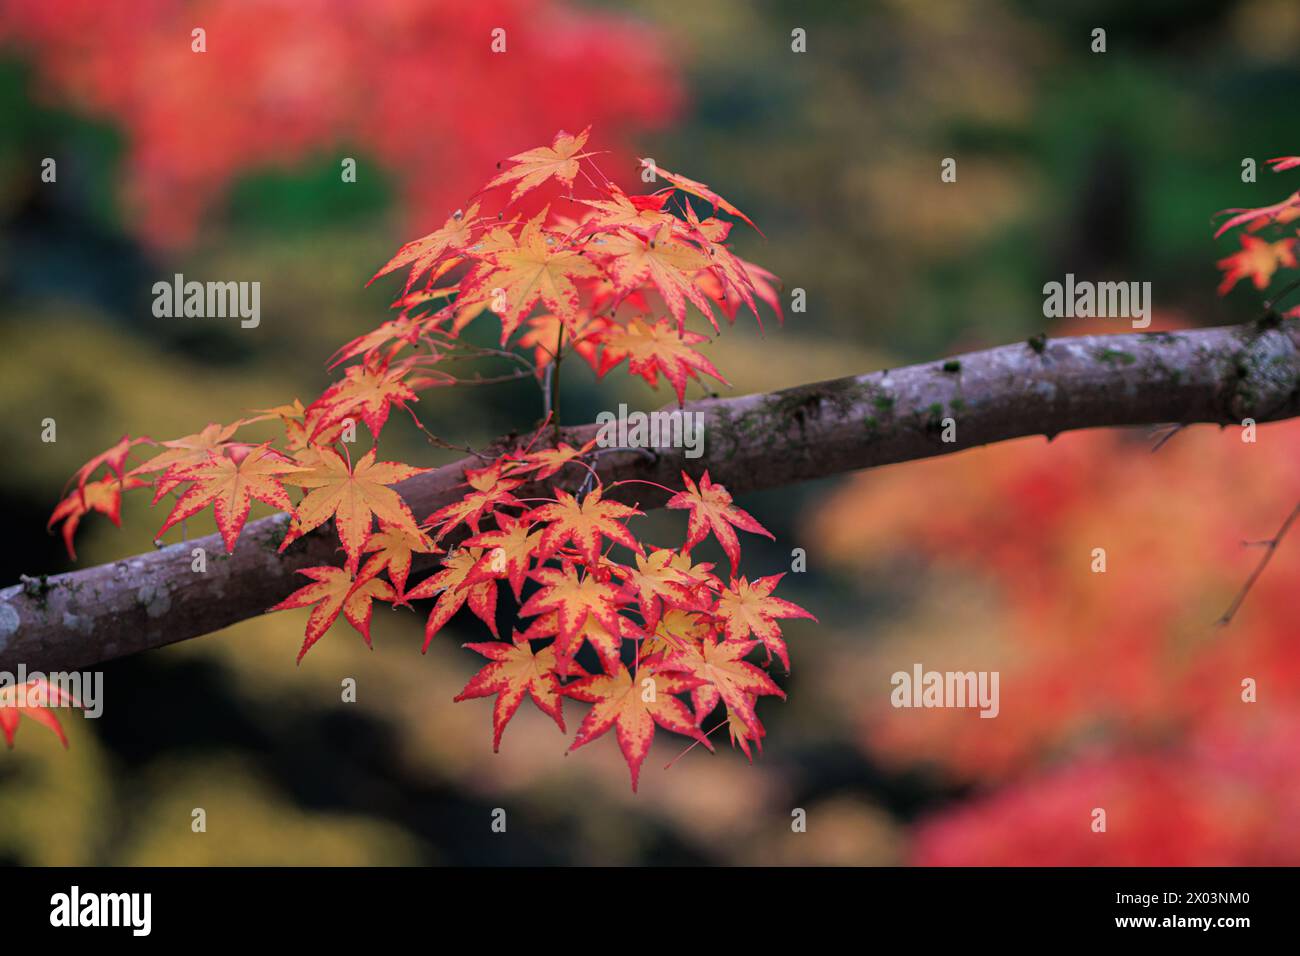 Dettaglio di foglie di acero rosso vivace su un ramo in Giappone Foto Stock